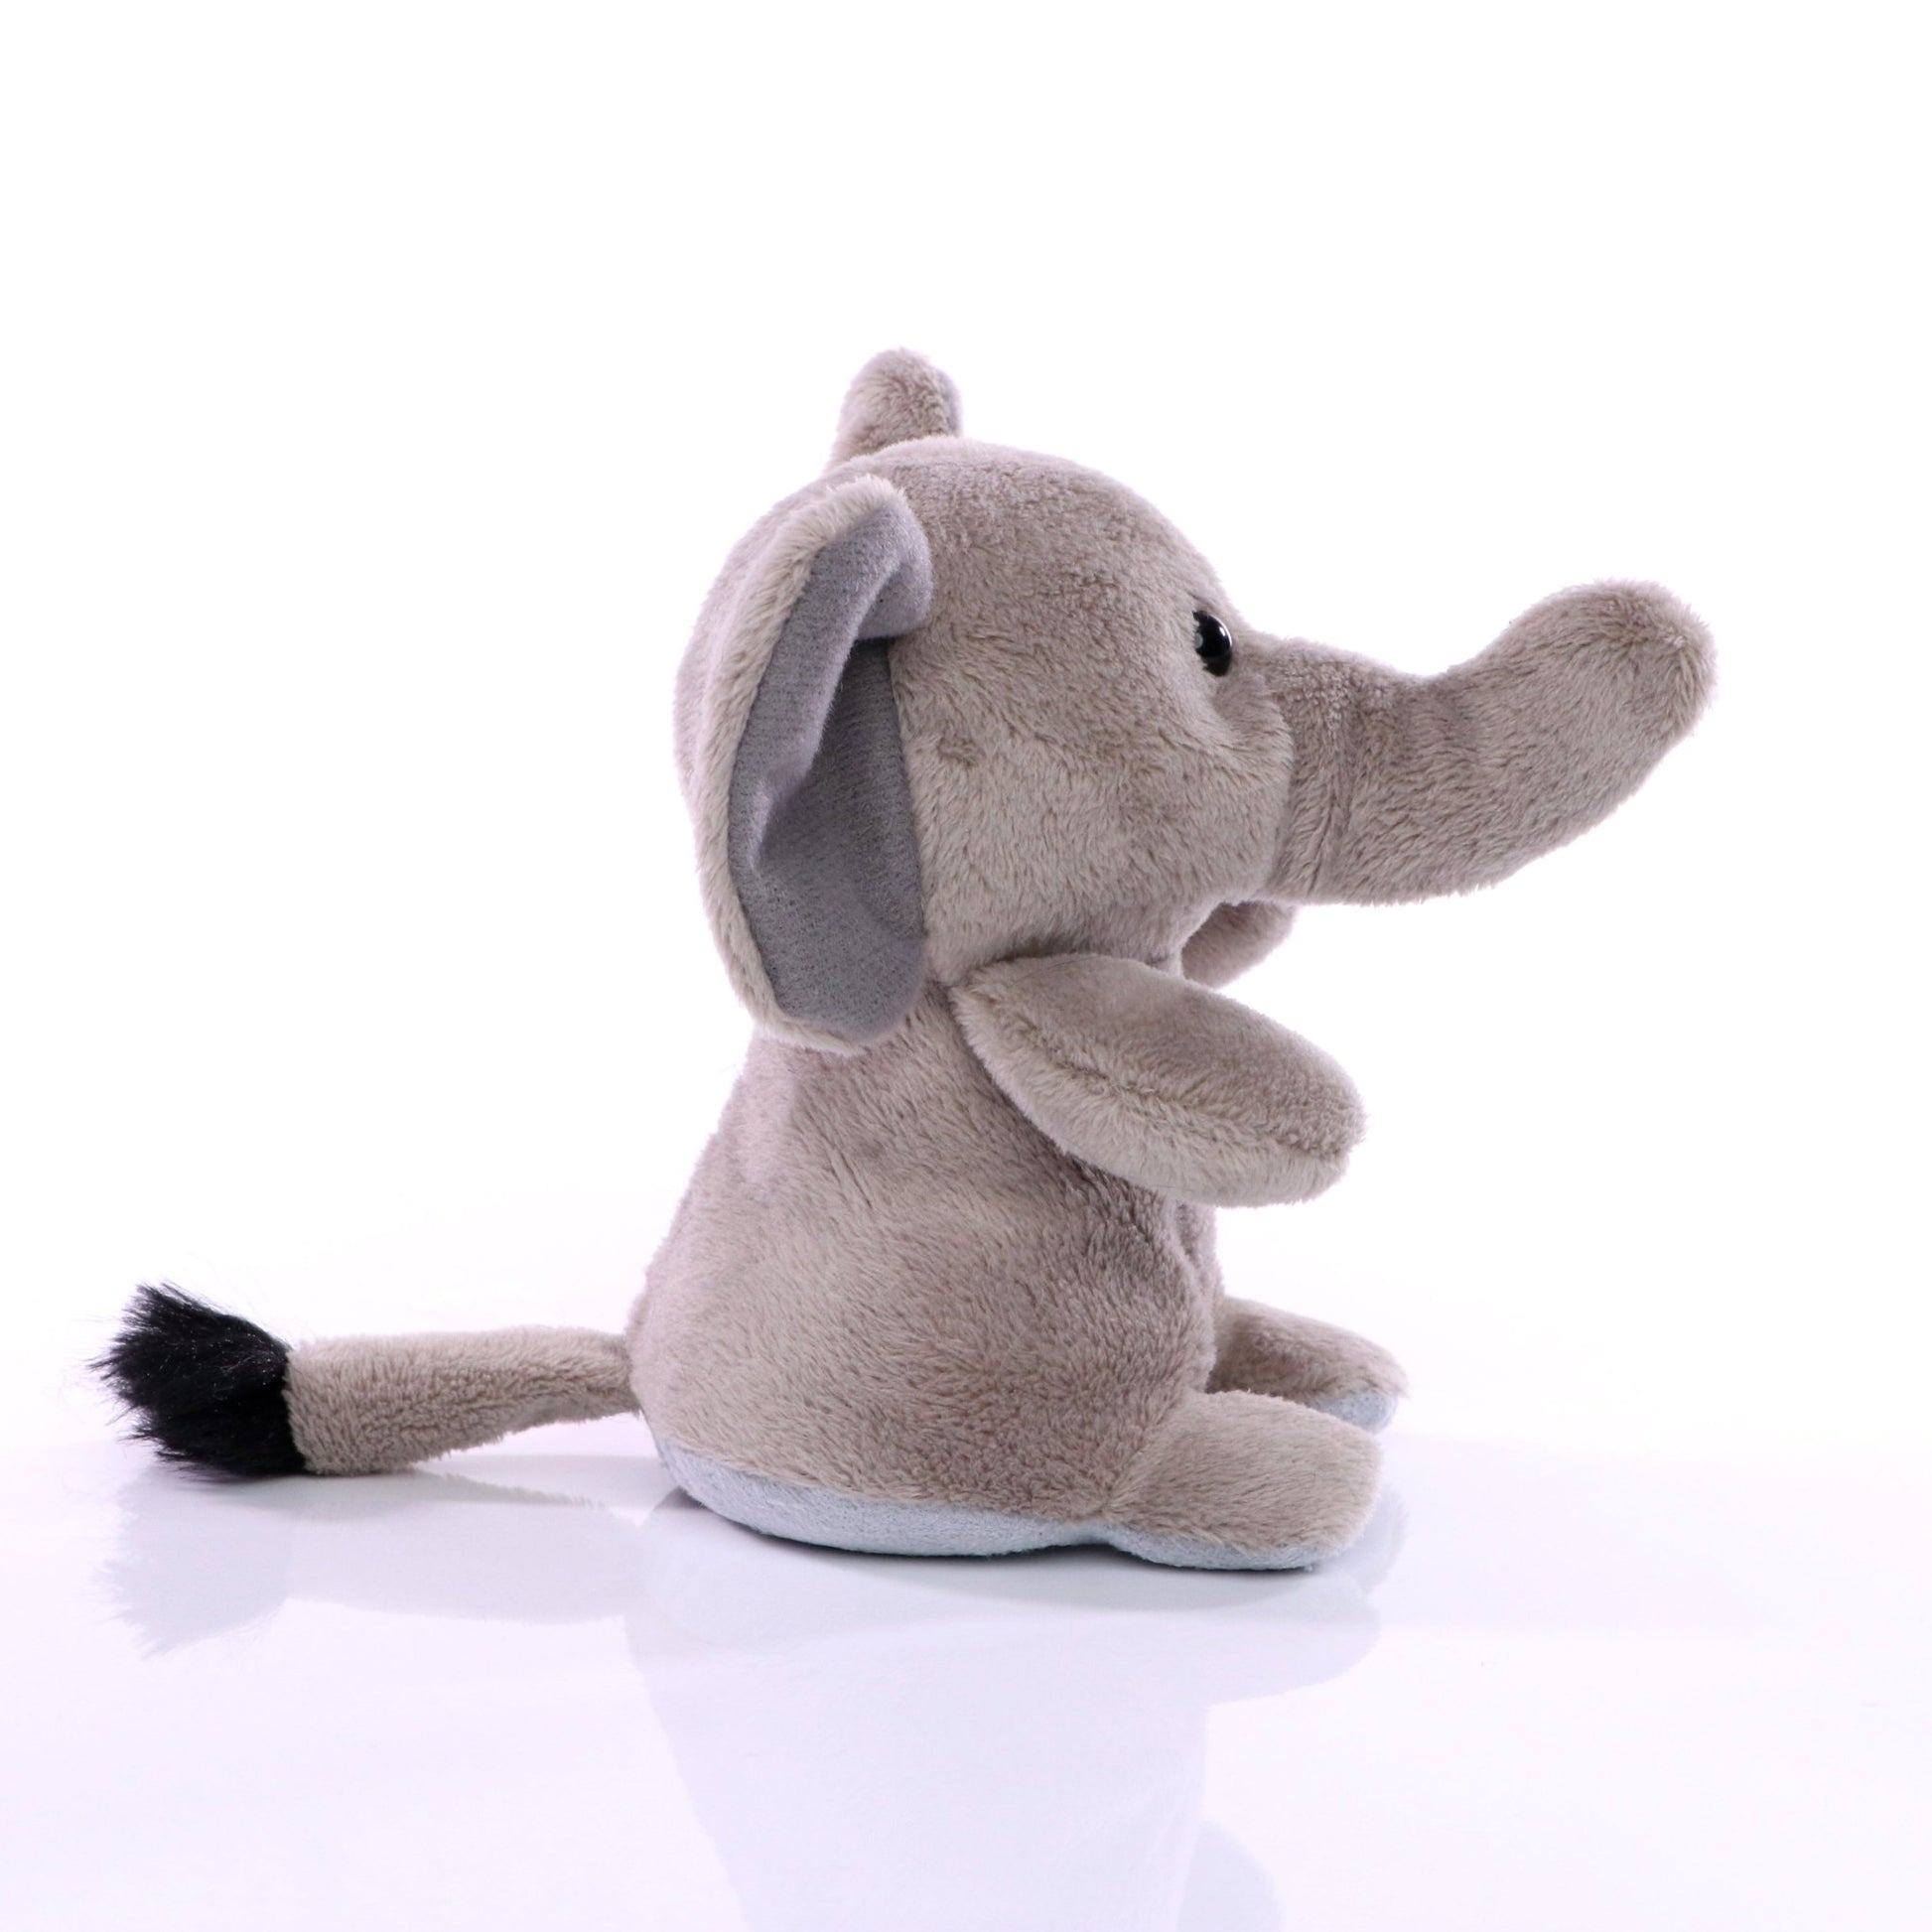 XXL Elefant mit Microfaser-Unterseite zur Reinigung von glatten Oberflächen (z.B. Display) - HalloGeschenk.de #geschenkideen# #personalisiert# #geschenk#